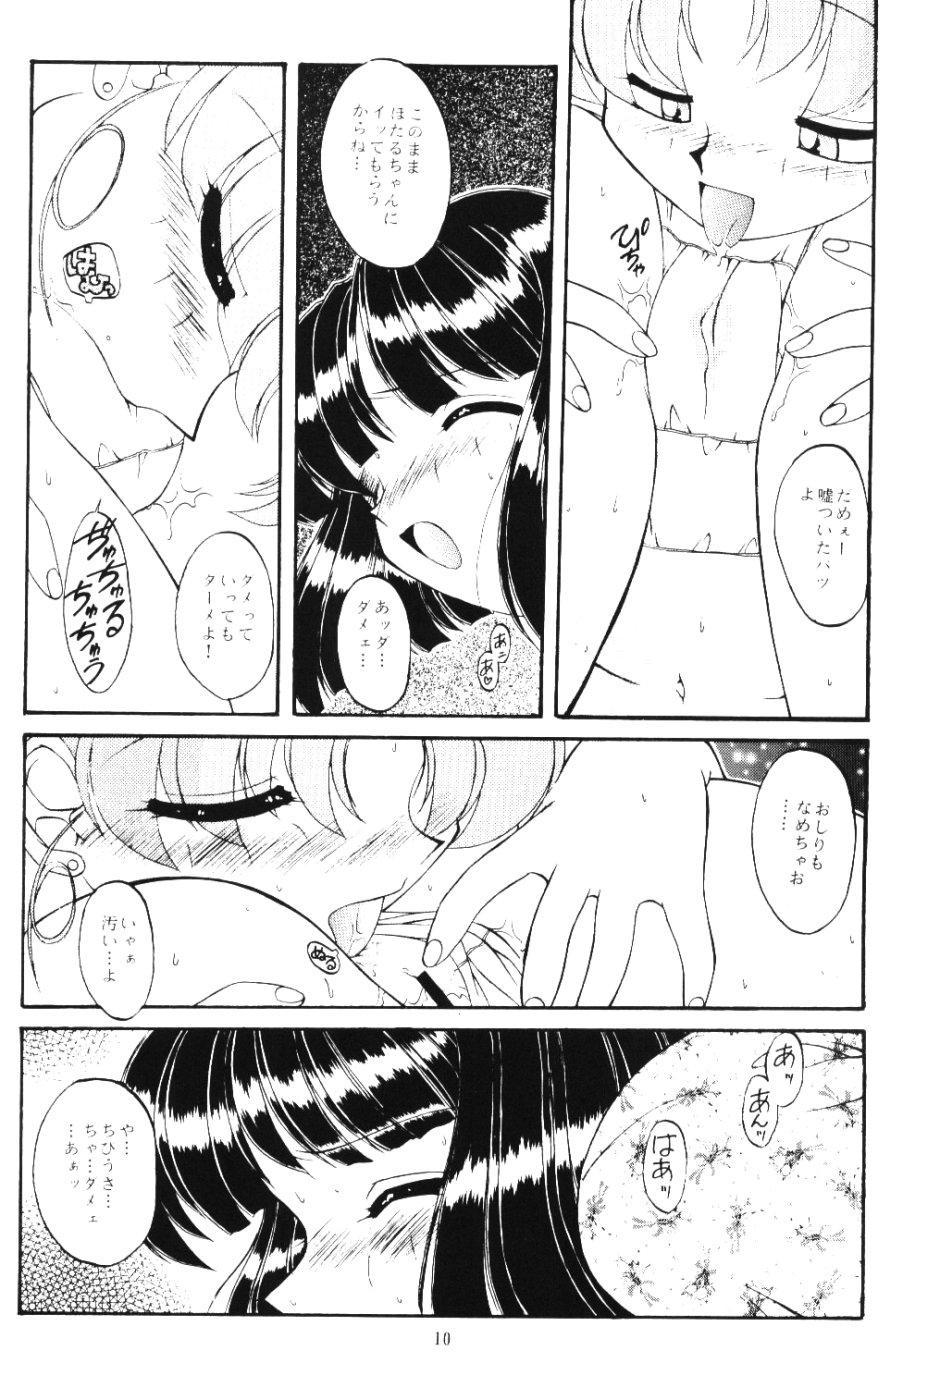 Nurse Moon Memories Vol. 2 - Sailor moon Bunda Grande - Page 9